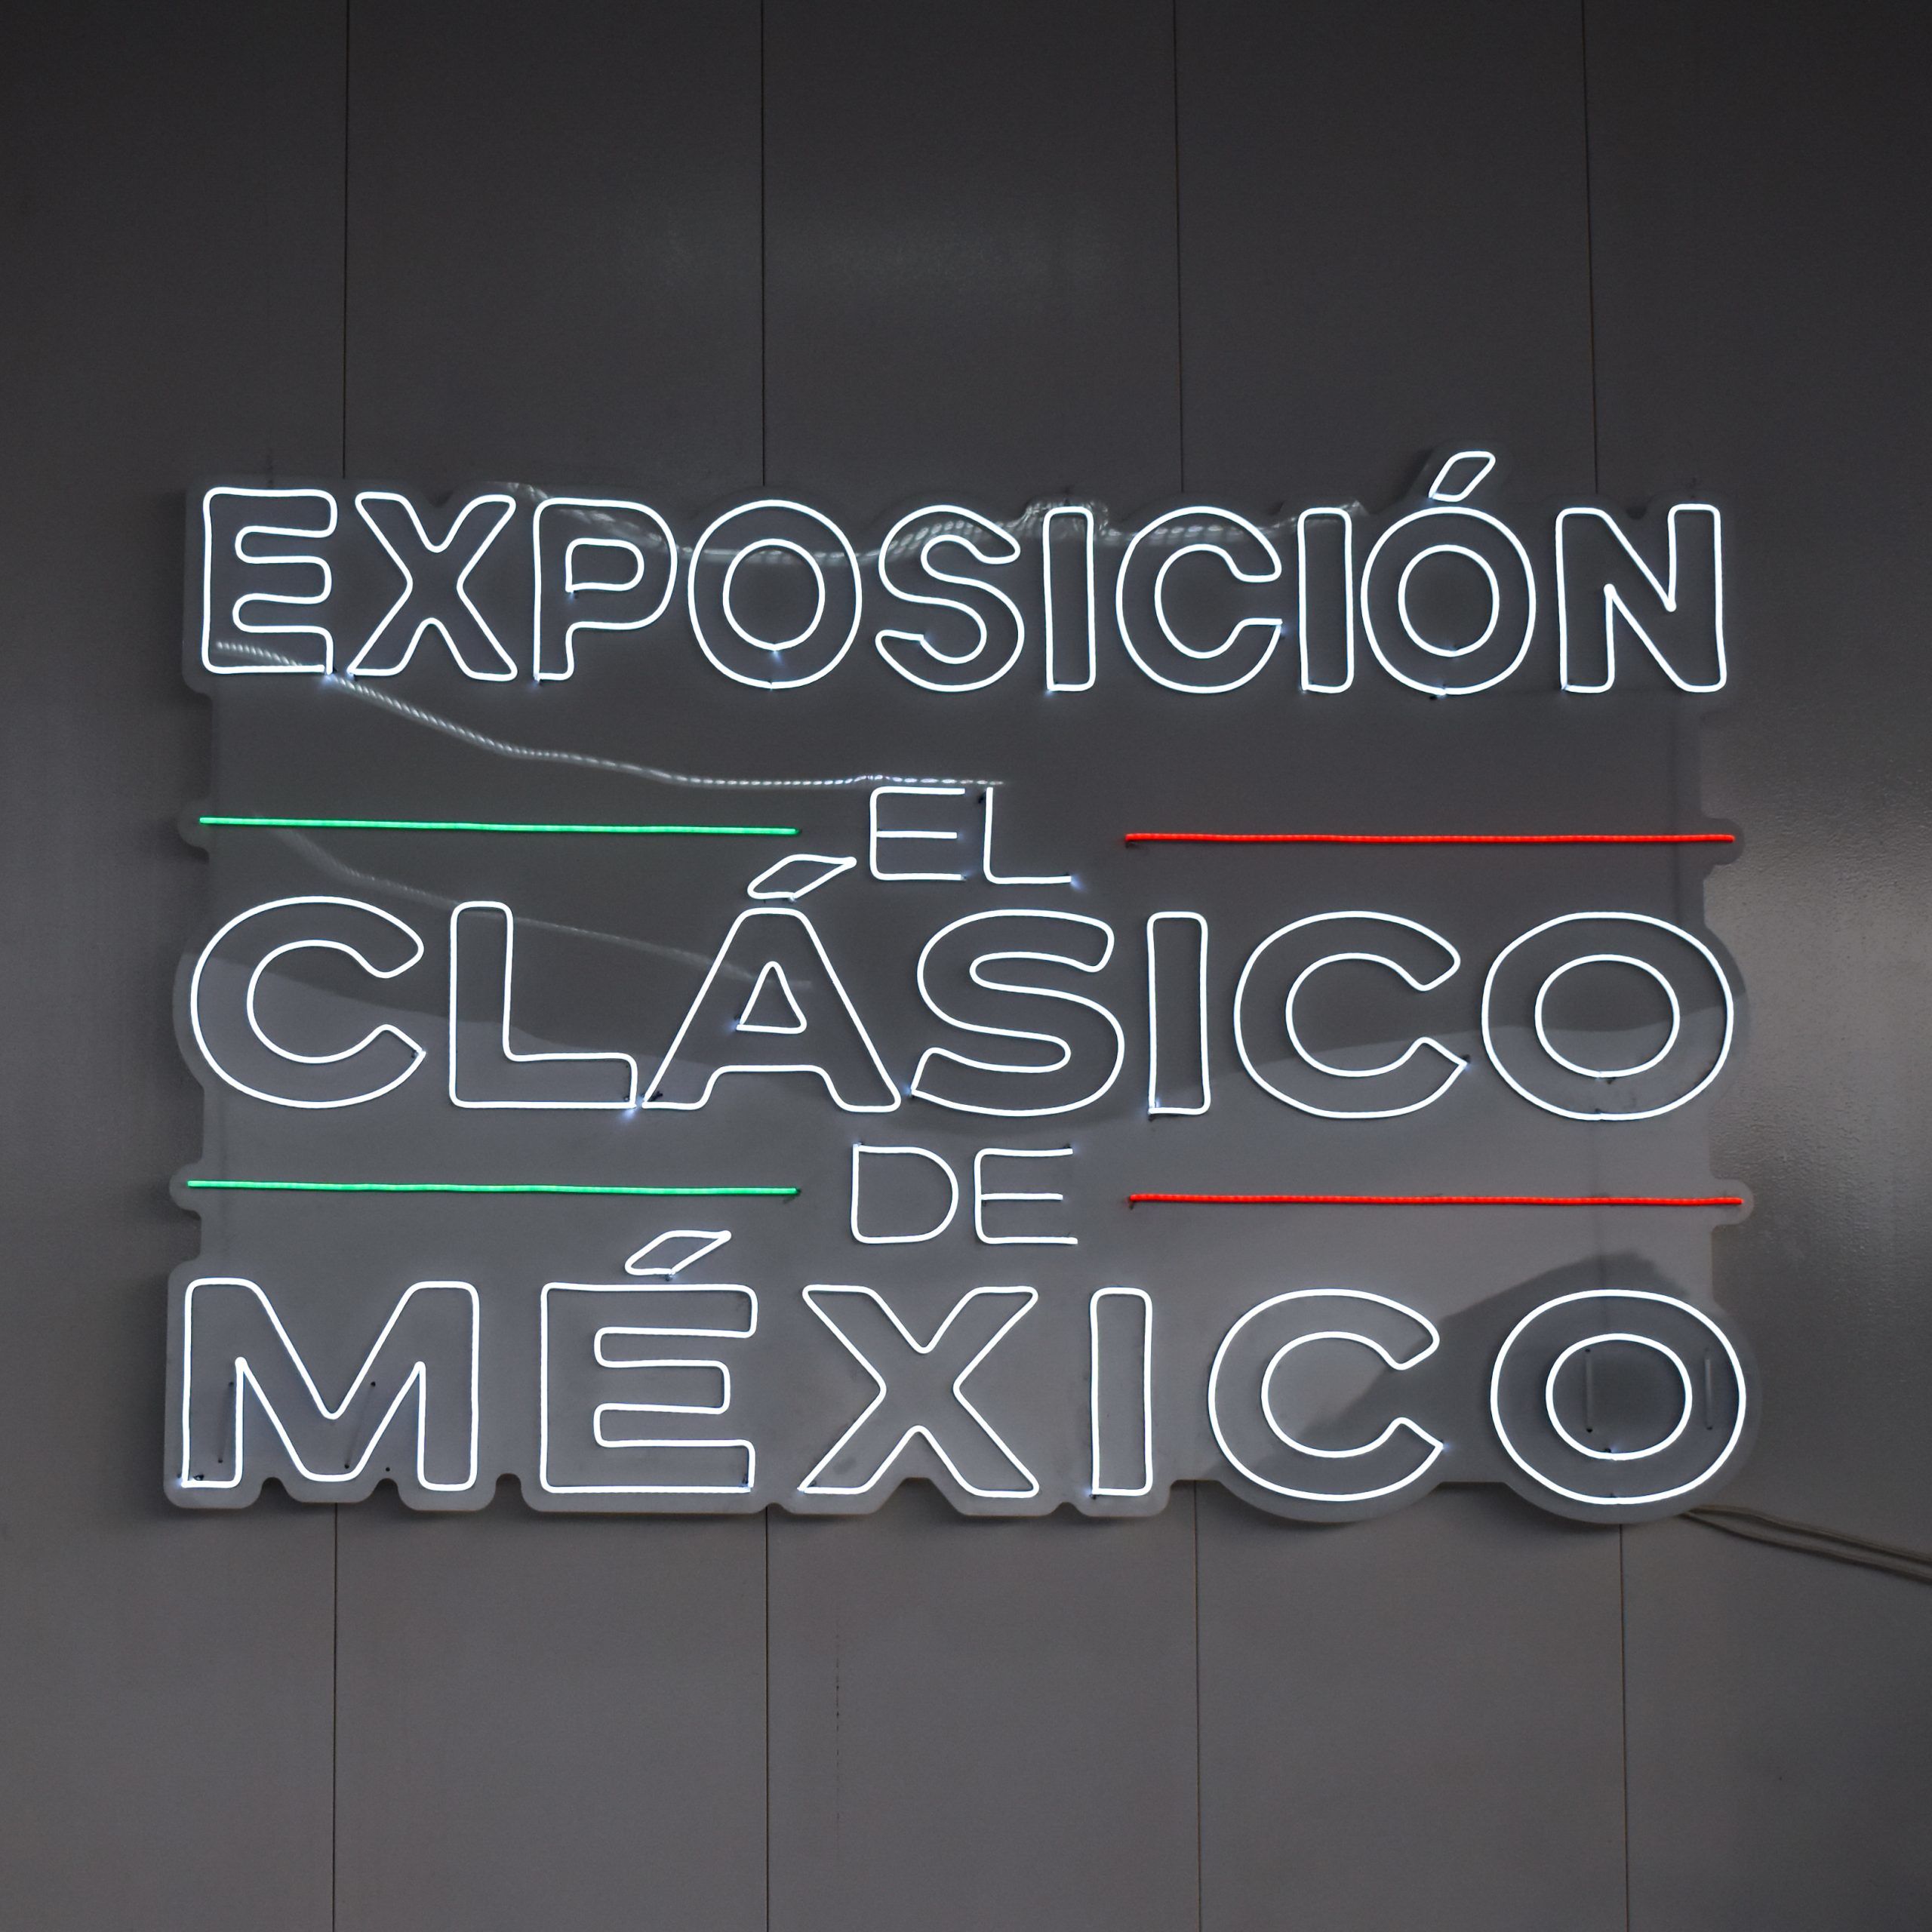 Los archirivales de la Liga MX unidos en una exposición